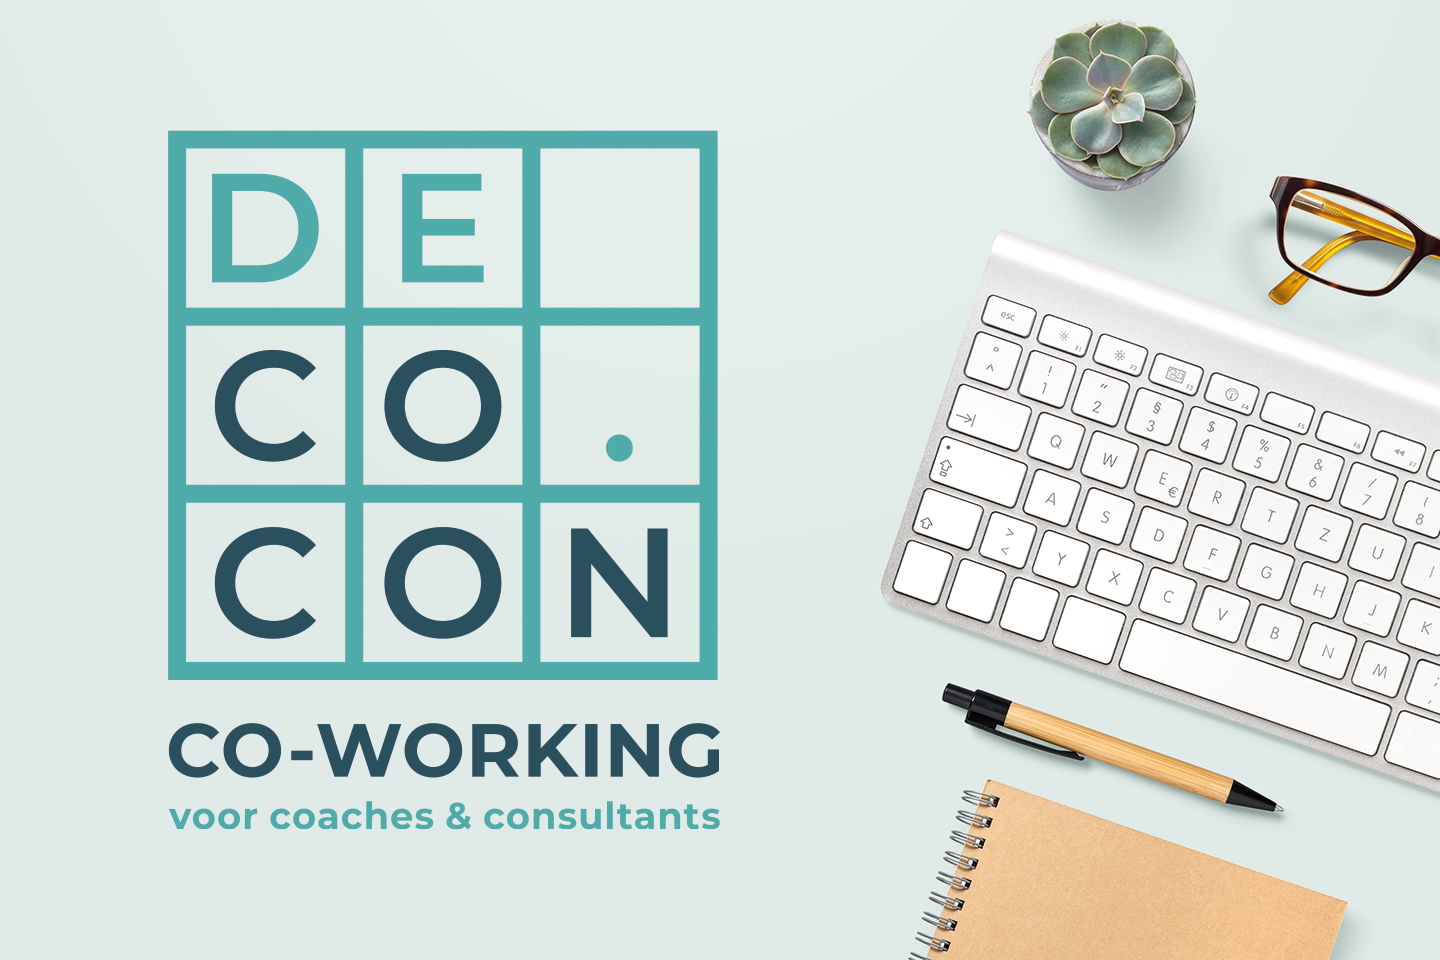 #logodesign #grafischontwerp #aleengrafischontwerp #decocon #coworking #coach #consultant #deinze